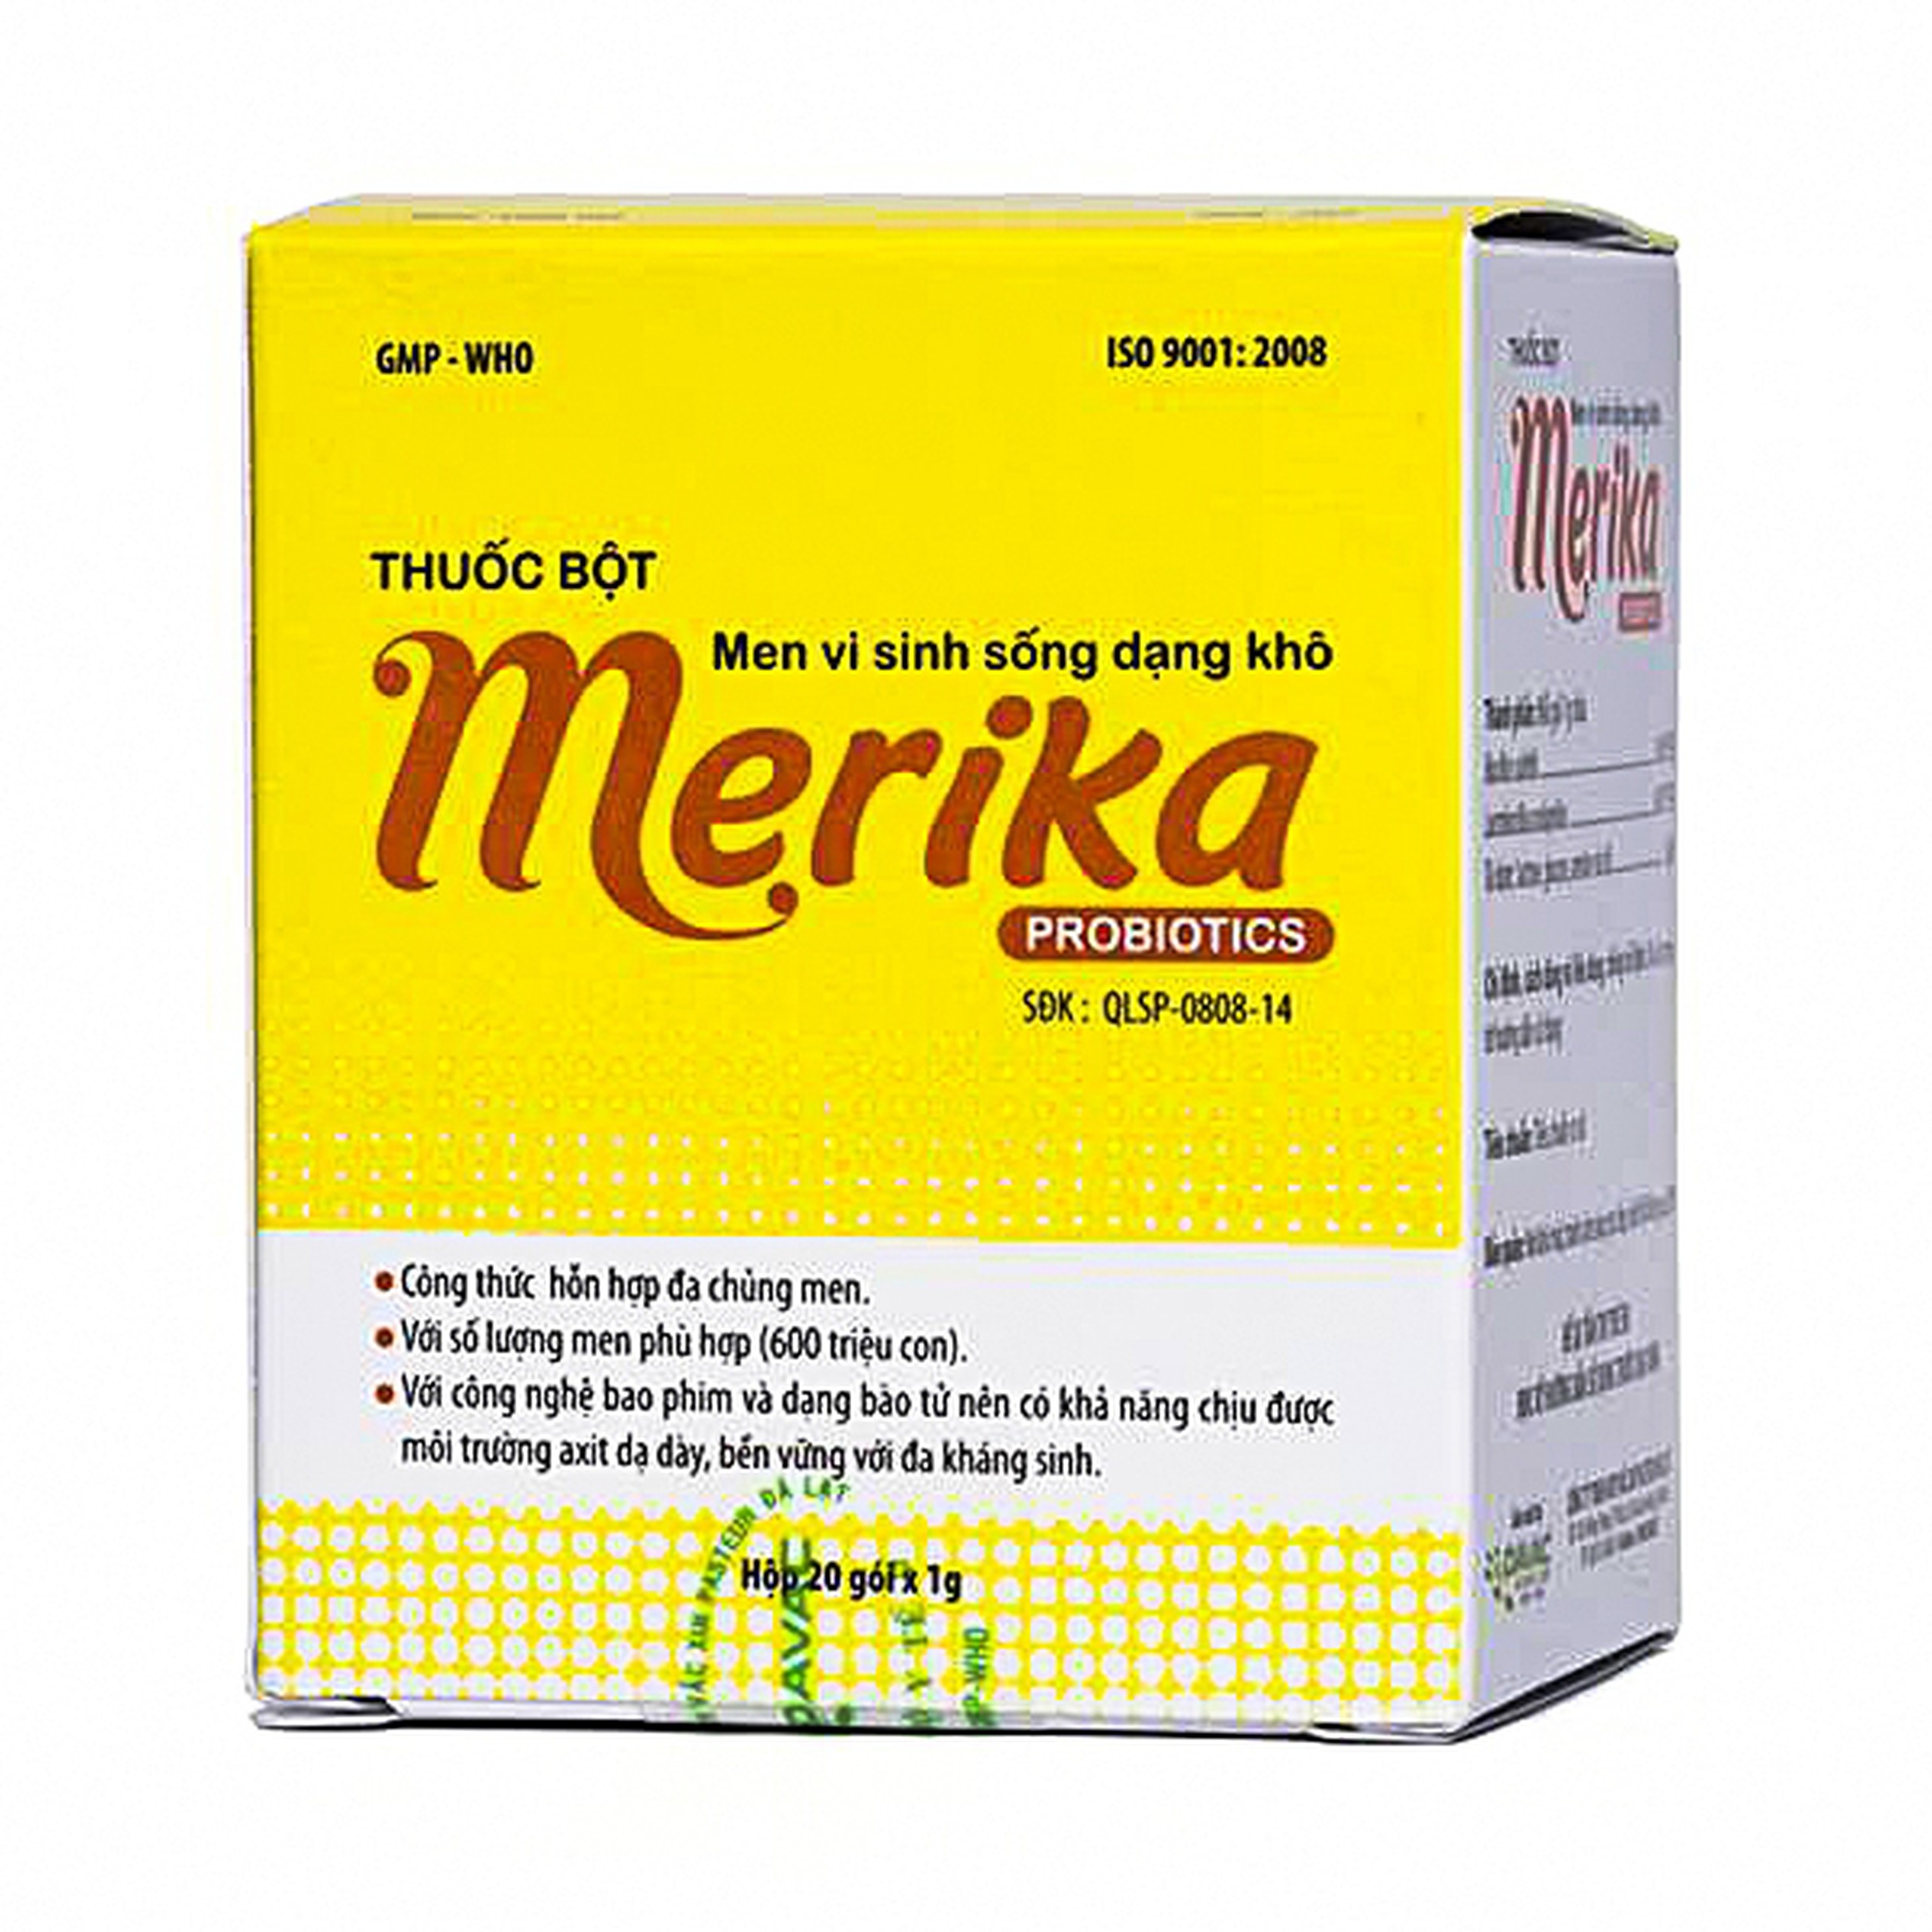 Men vi sinh sống dạng khô Merika Probiotics Davac dùng cho viêm ruột, tiêu chảy, táo bón (20 gói)